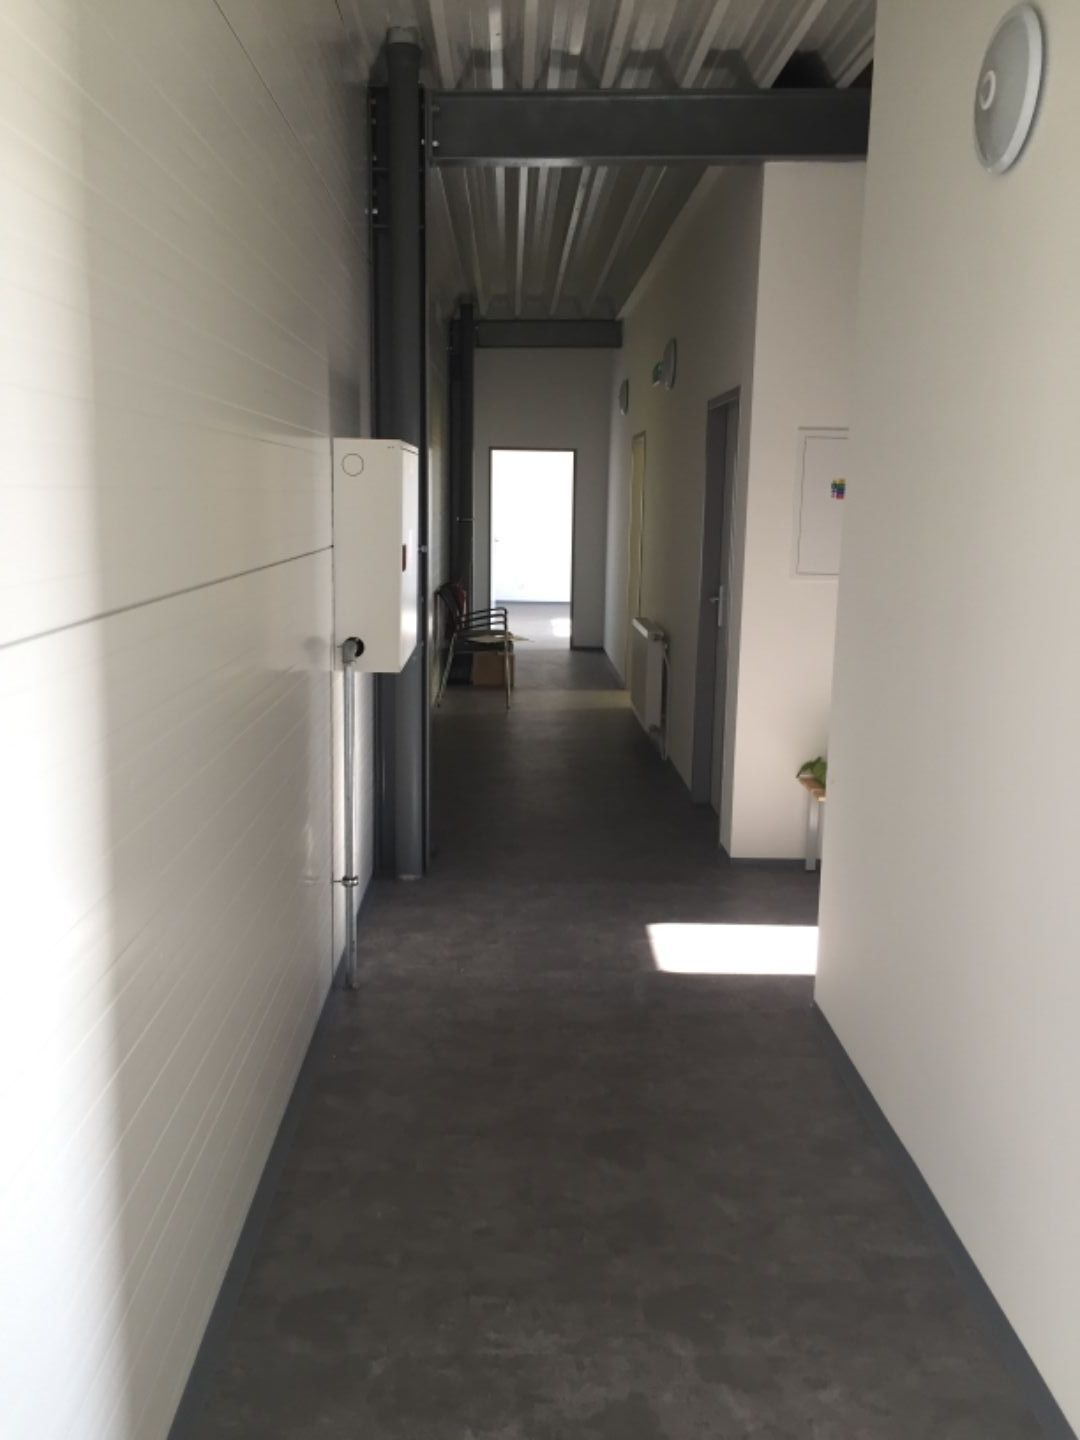 4 x  kancelárske priestory:1x26 m2, 2x16m2, 1x13m2 na prenájom oproti OD TESCO v Dunajskej Strede od 100 EUR/mesiac!!!!